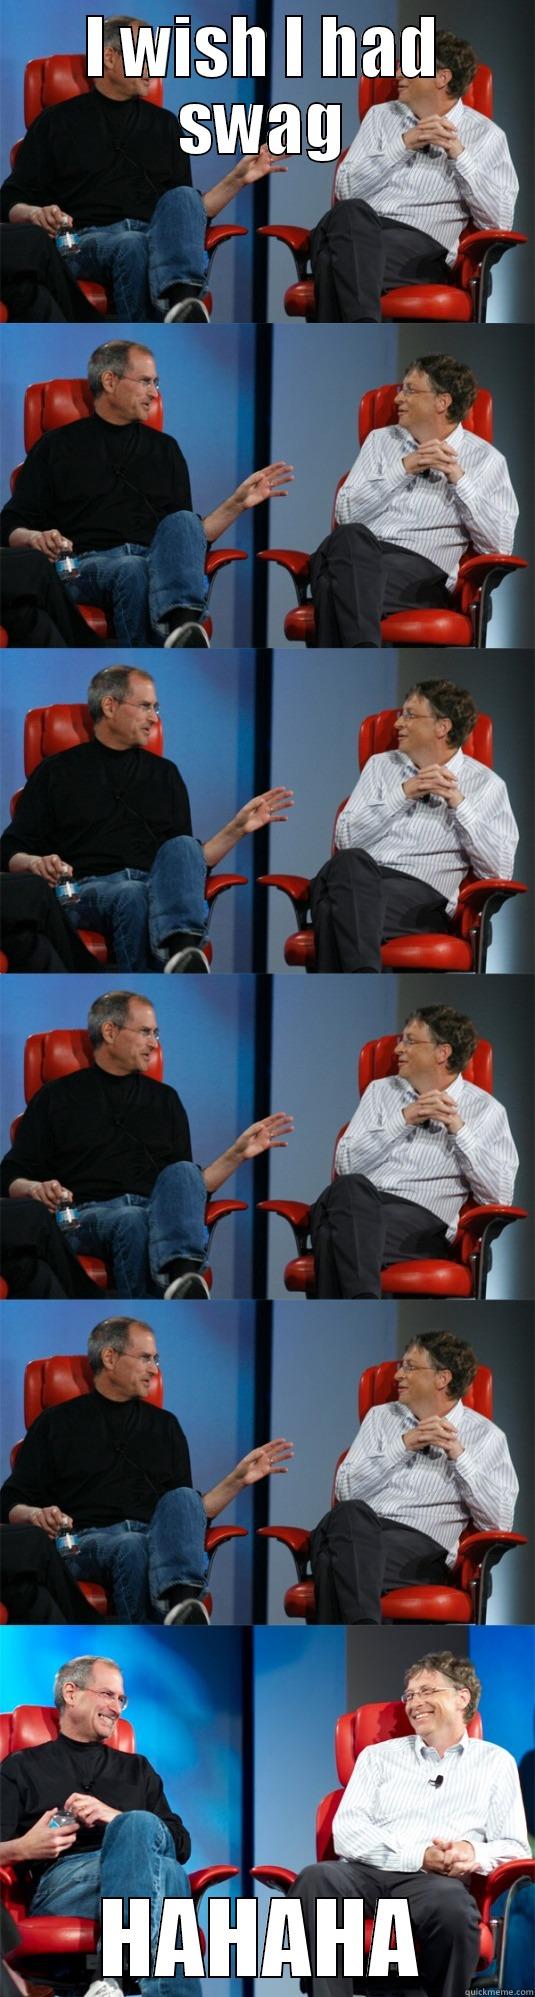 I WISH I HAD SWAG HAHAHA Steve Jobs vs Bill Gates